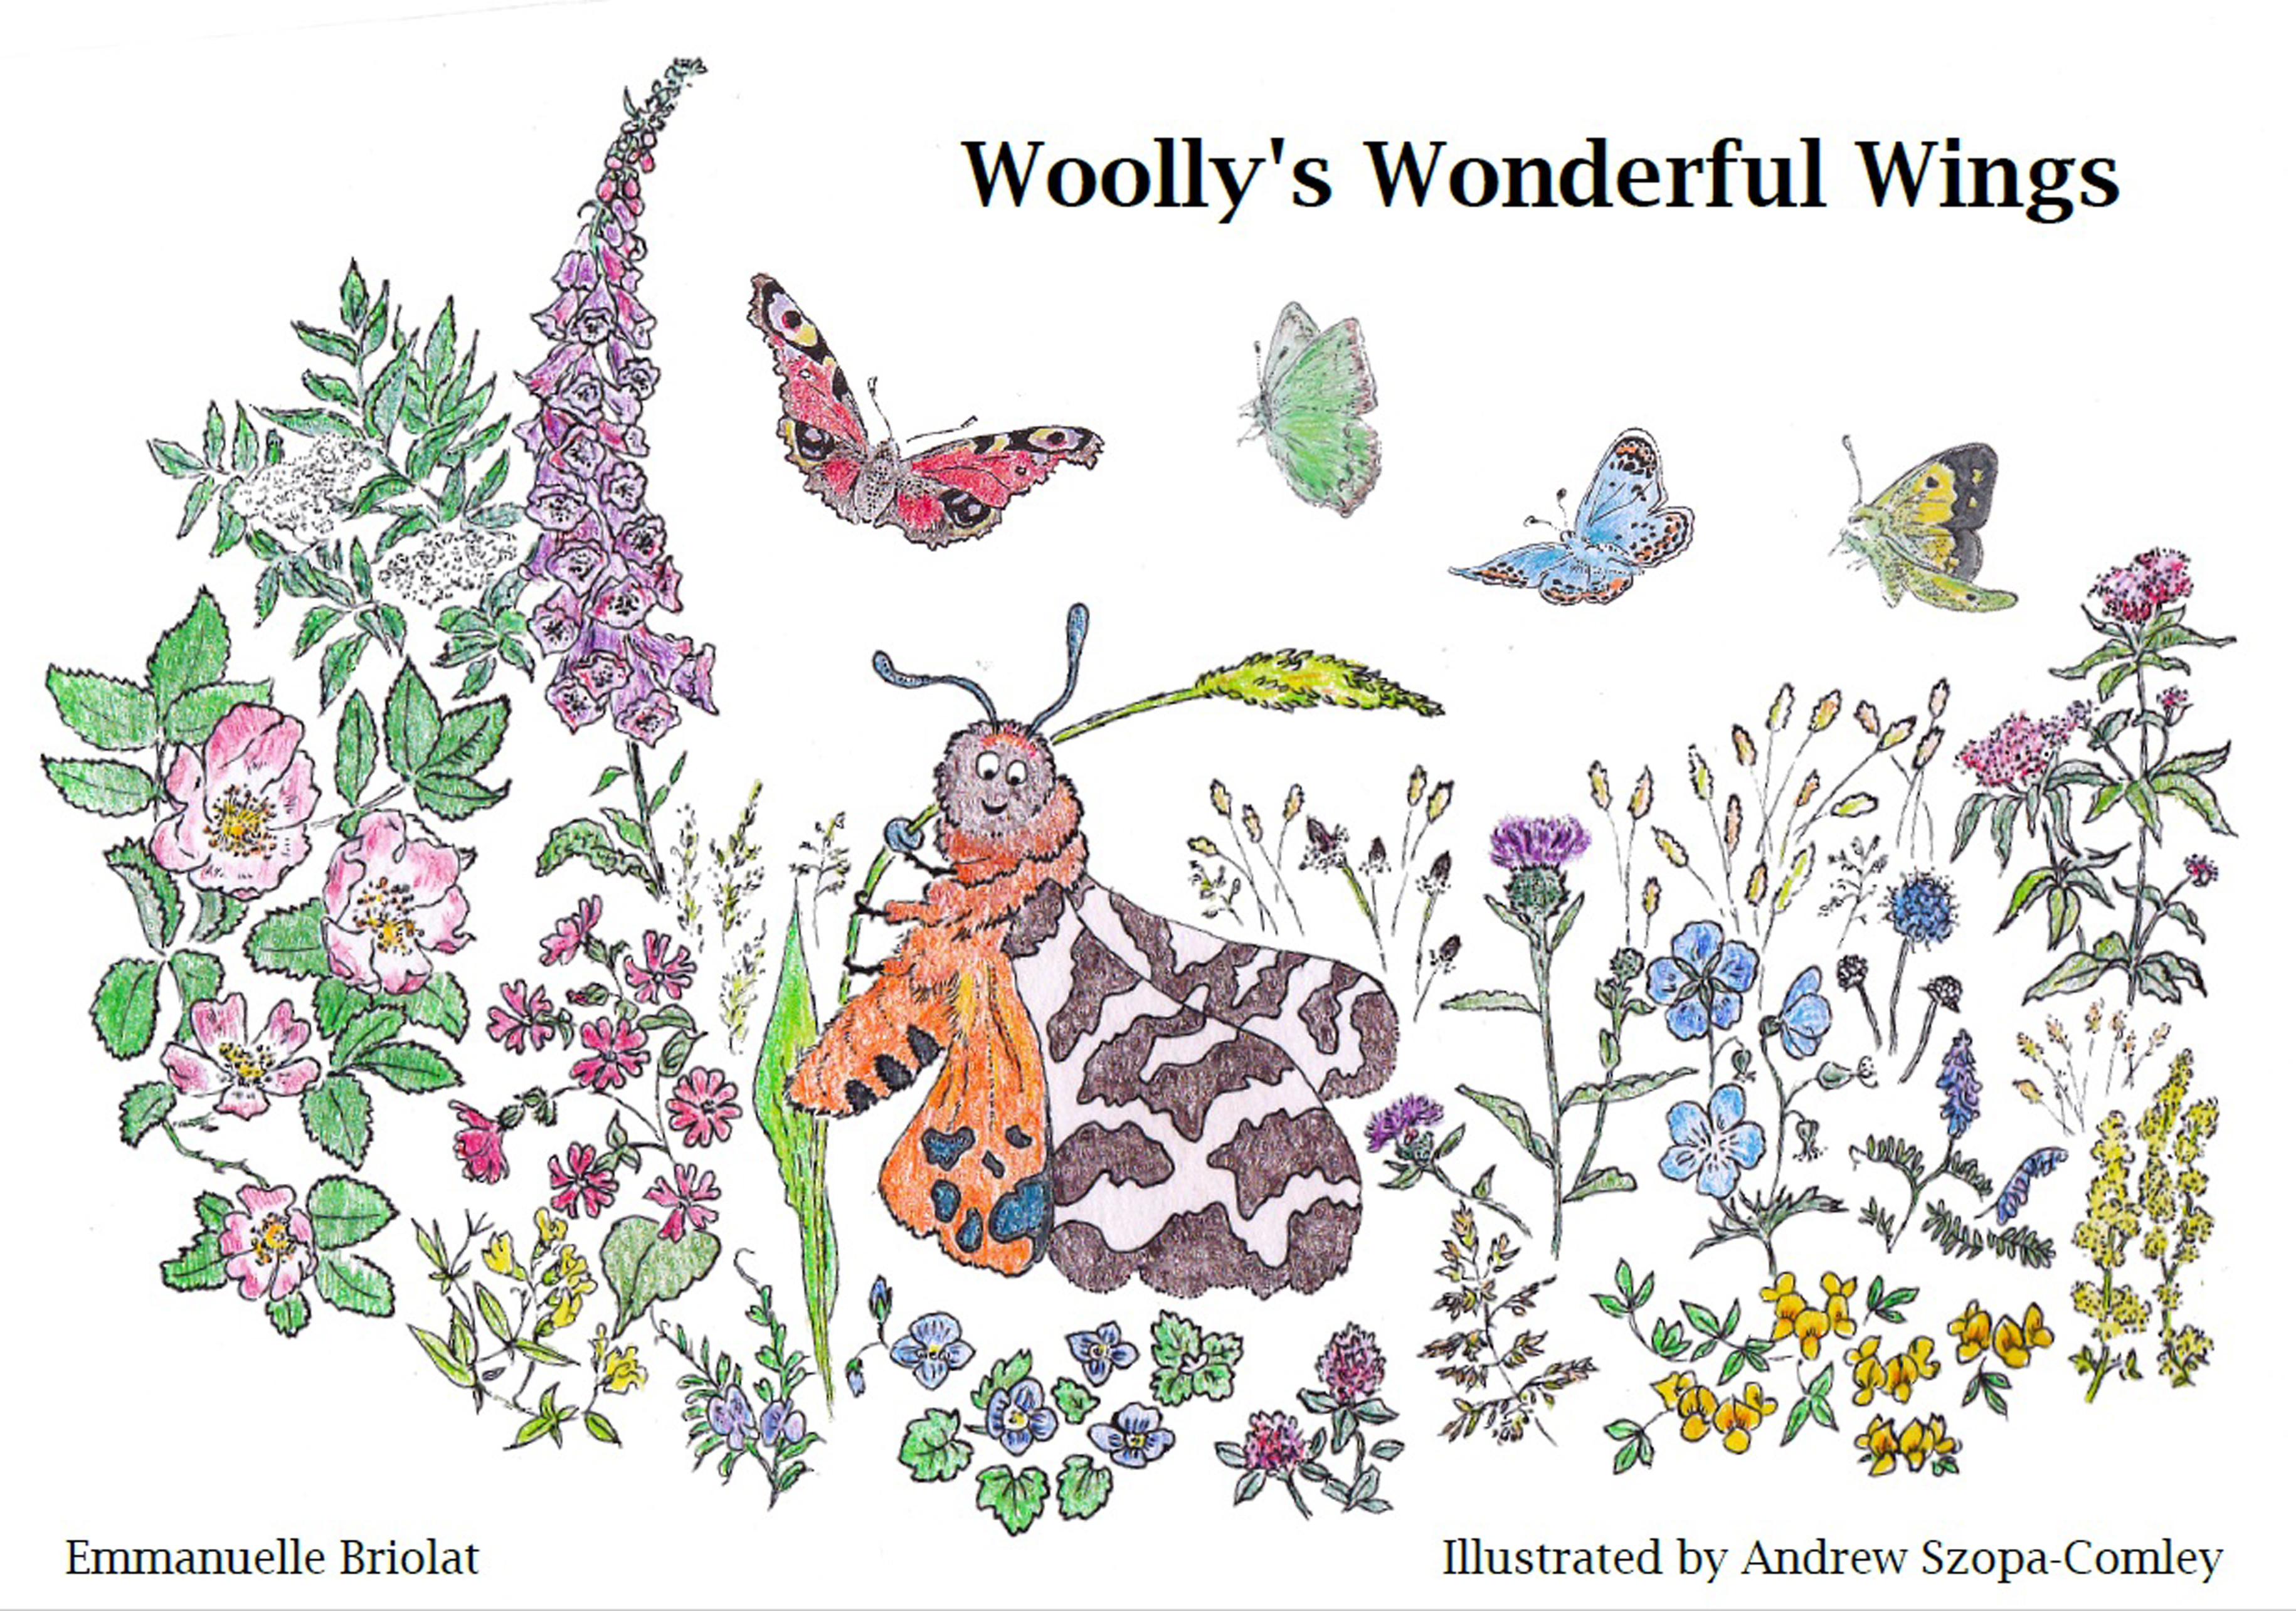 Woolly’s Wonderful Wings by Emmanuelle Briolat